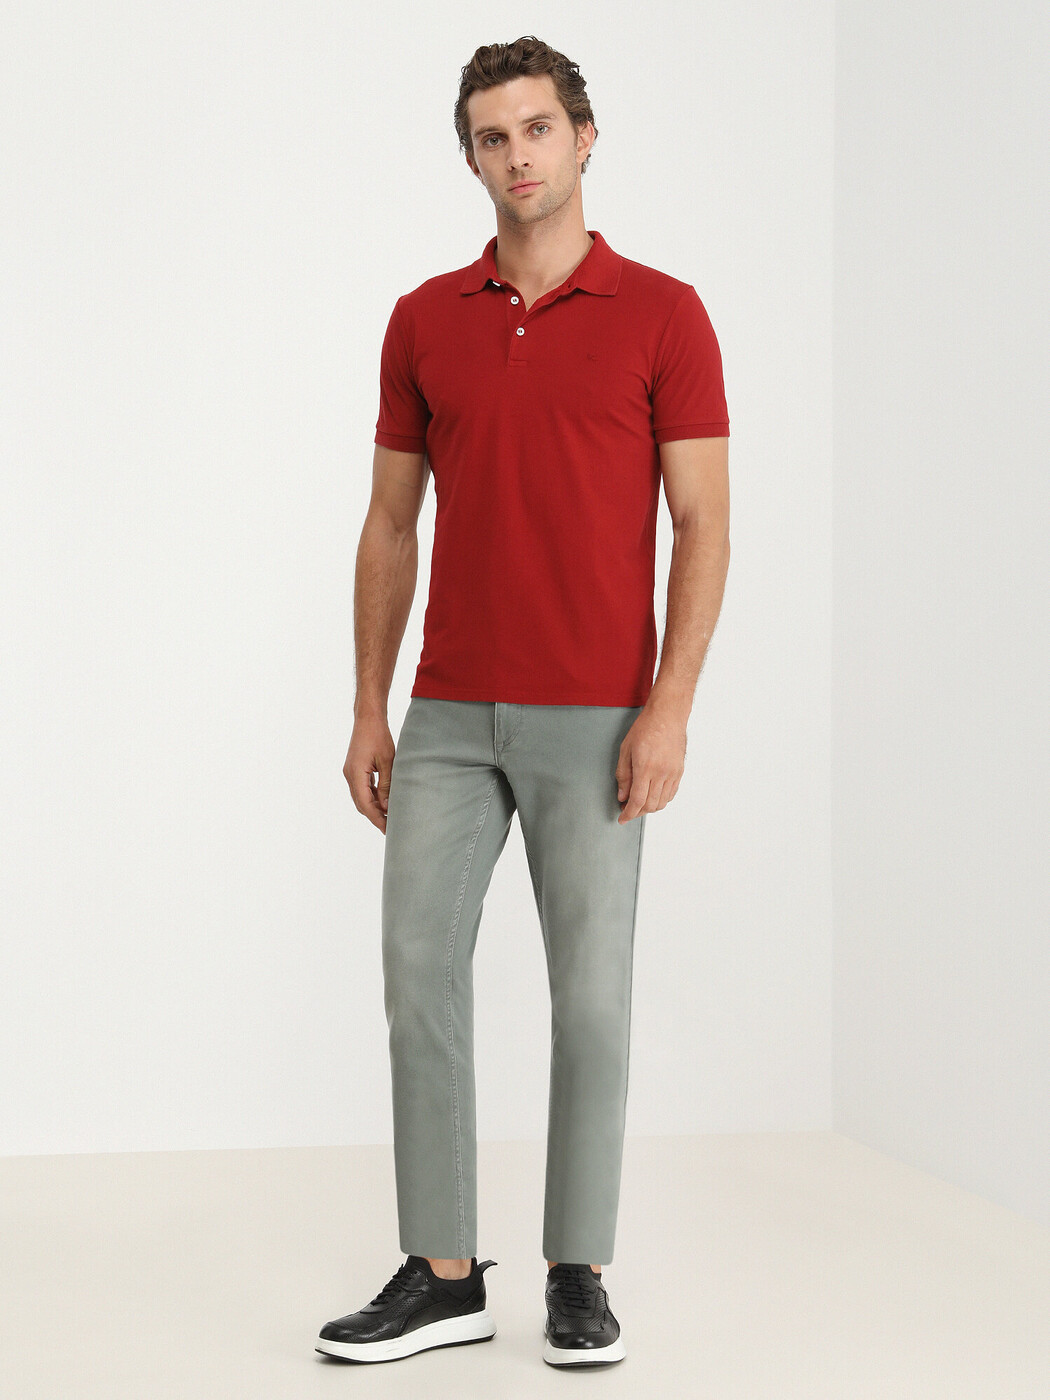 KİP - Kırmızı Düz Polo Yaka %100 Pamuk T-Shirt (1)